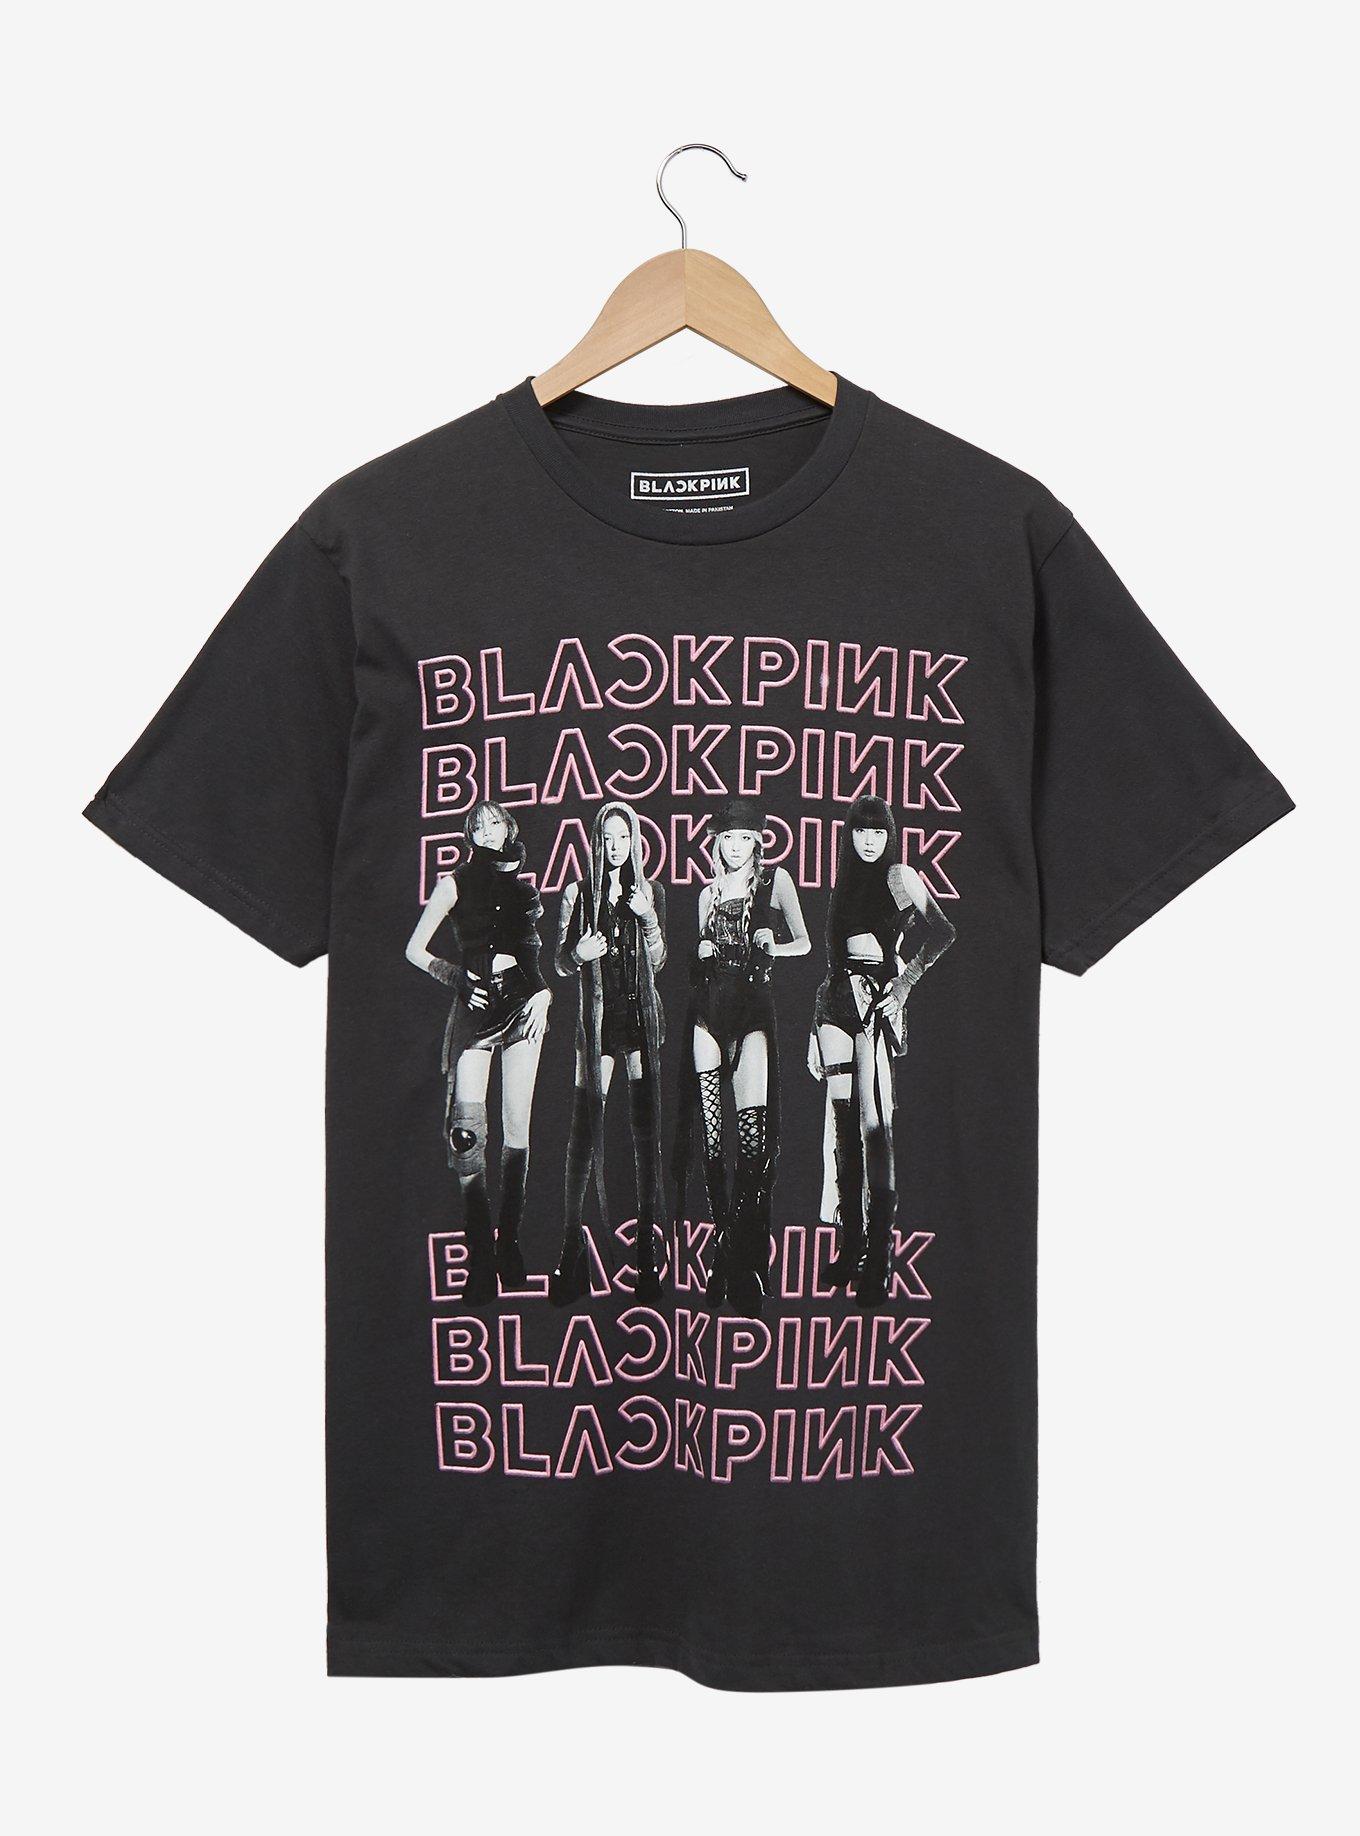 BLACKPINK Group Portrait T-Shirt - BoxLunch Exclusive, BLACK, hi-res